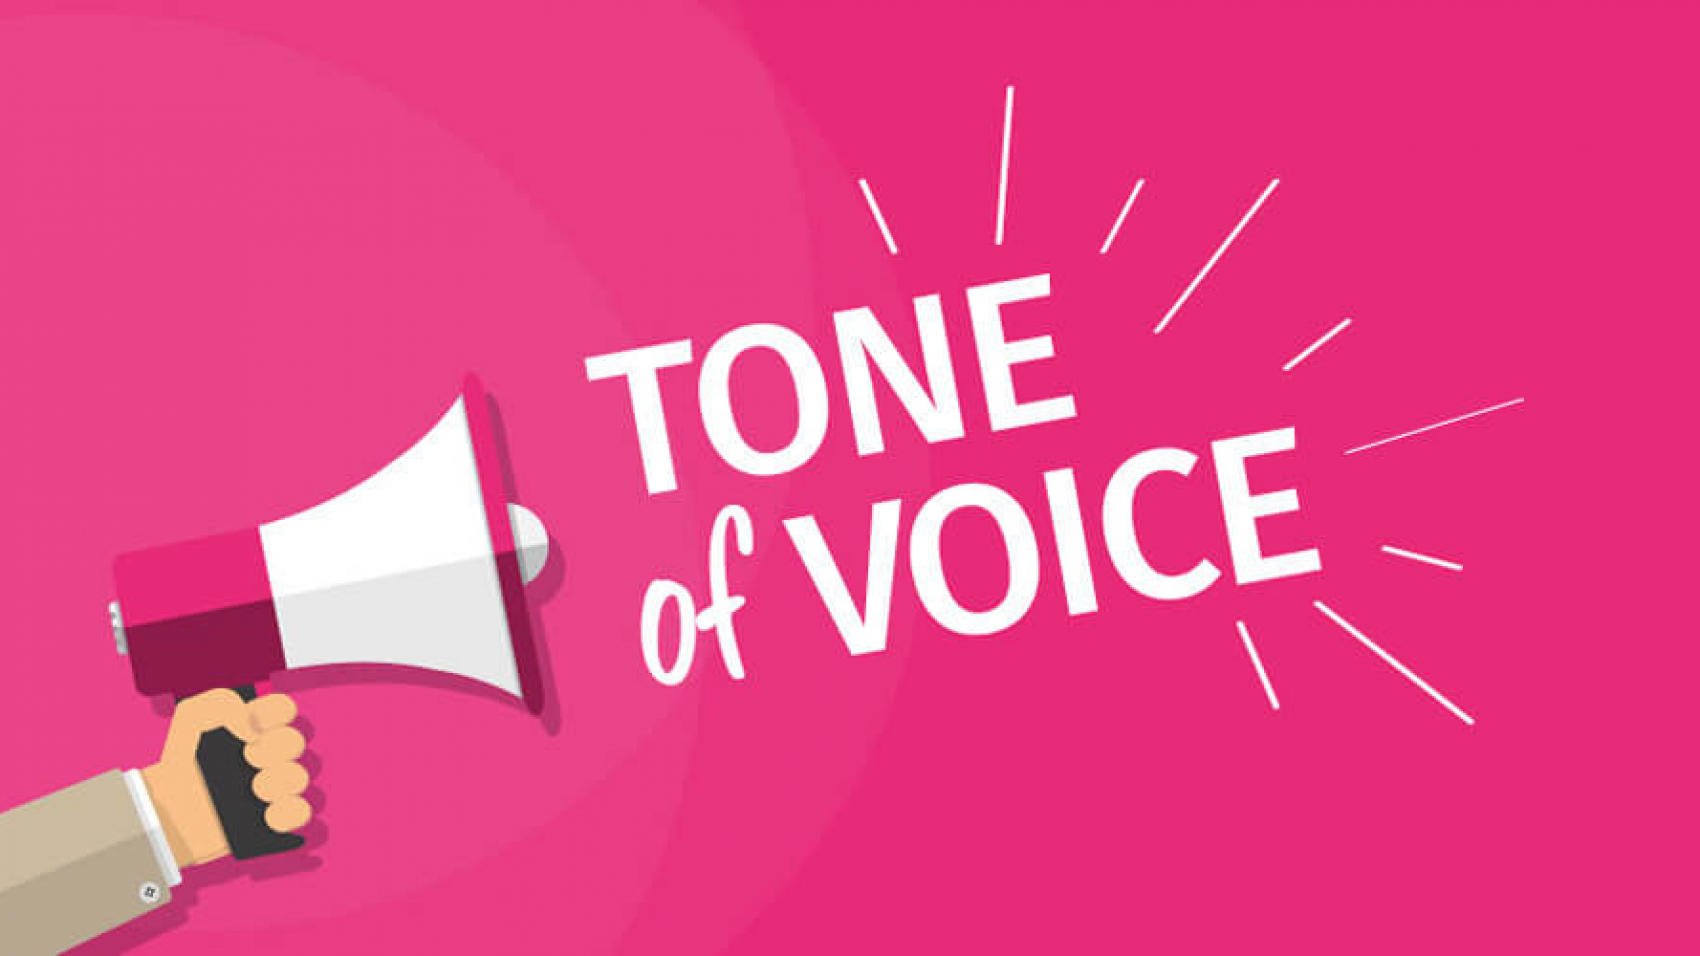 Как построить коммуникационную стратегию и выработать tone of voice